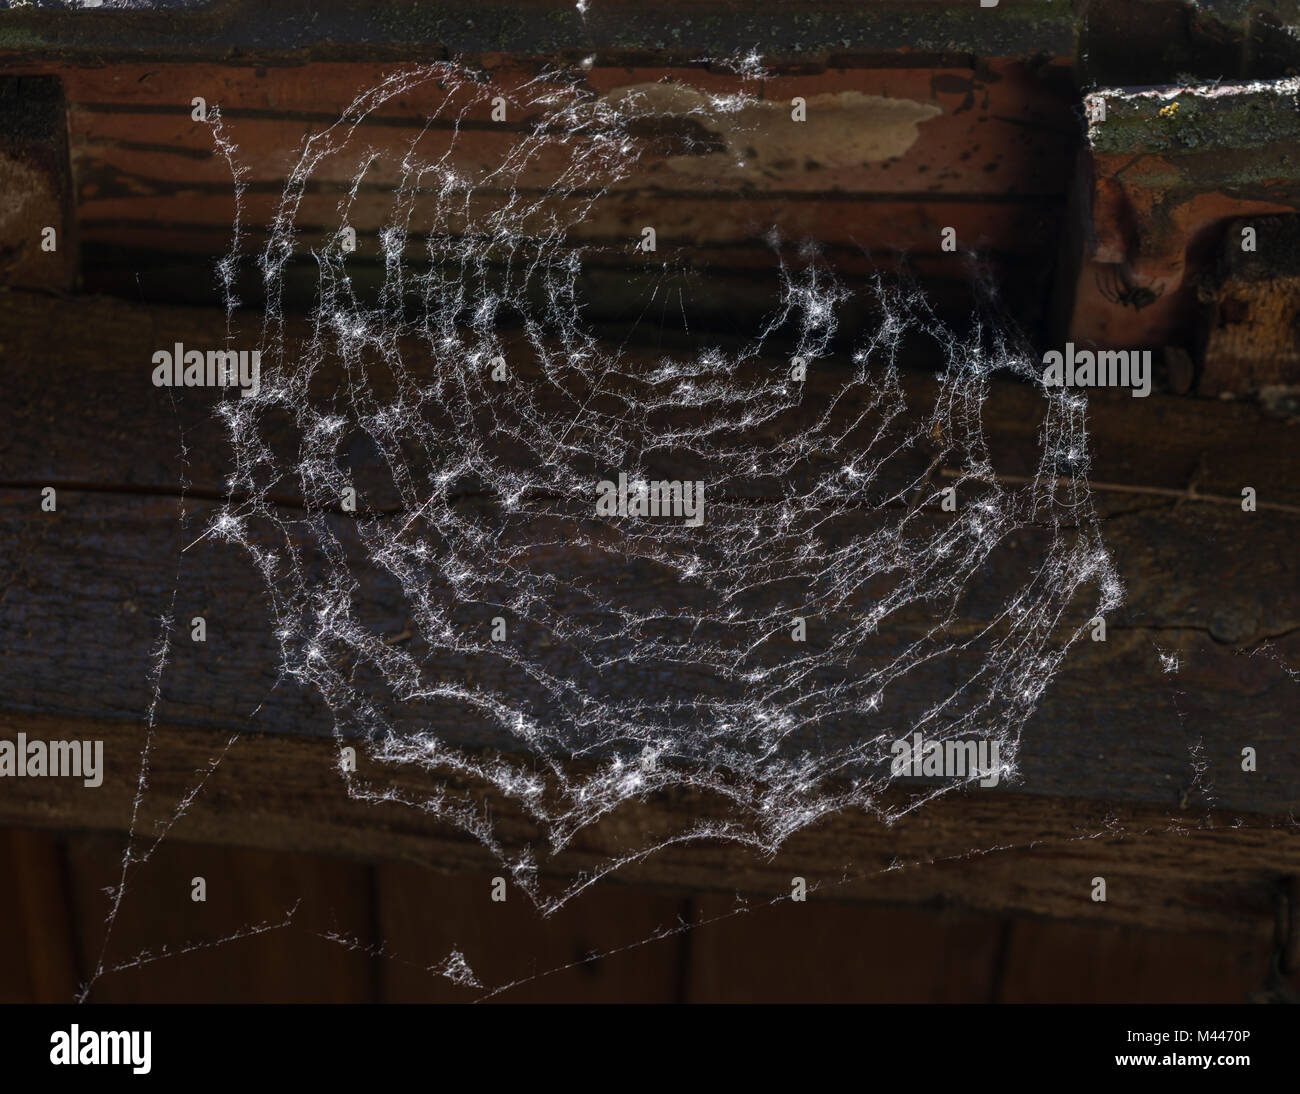 Graines de peuplier dans une toile d'araignée, Allemagne Banque D'Images